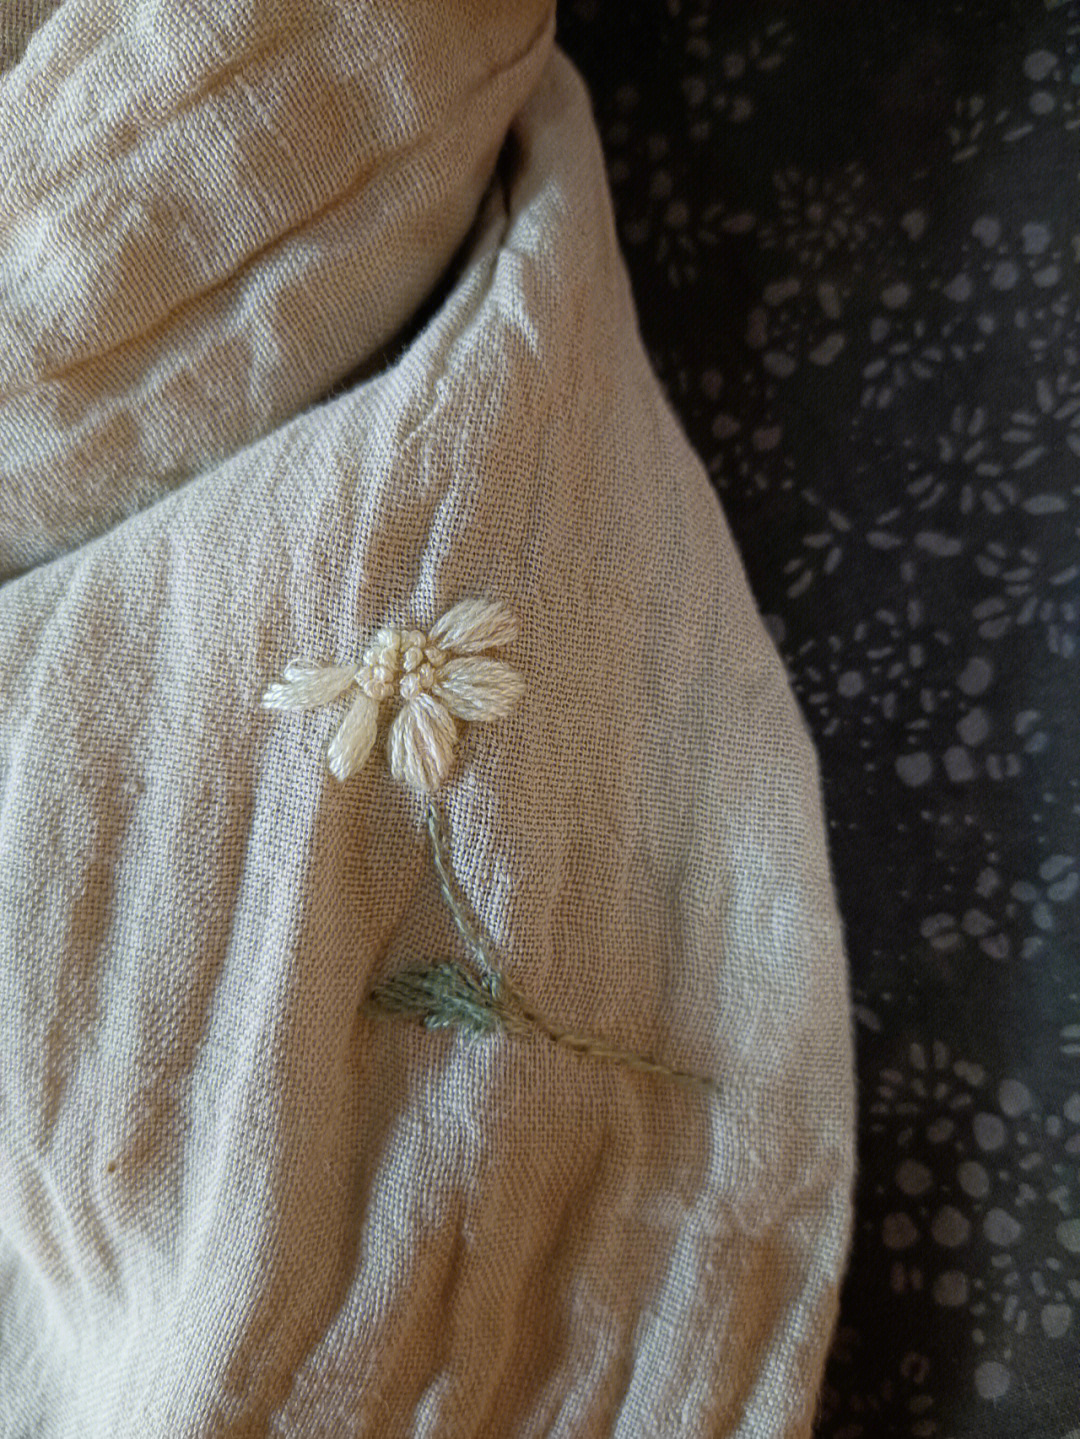 一朵小白花圣女小德兰图片